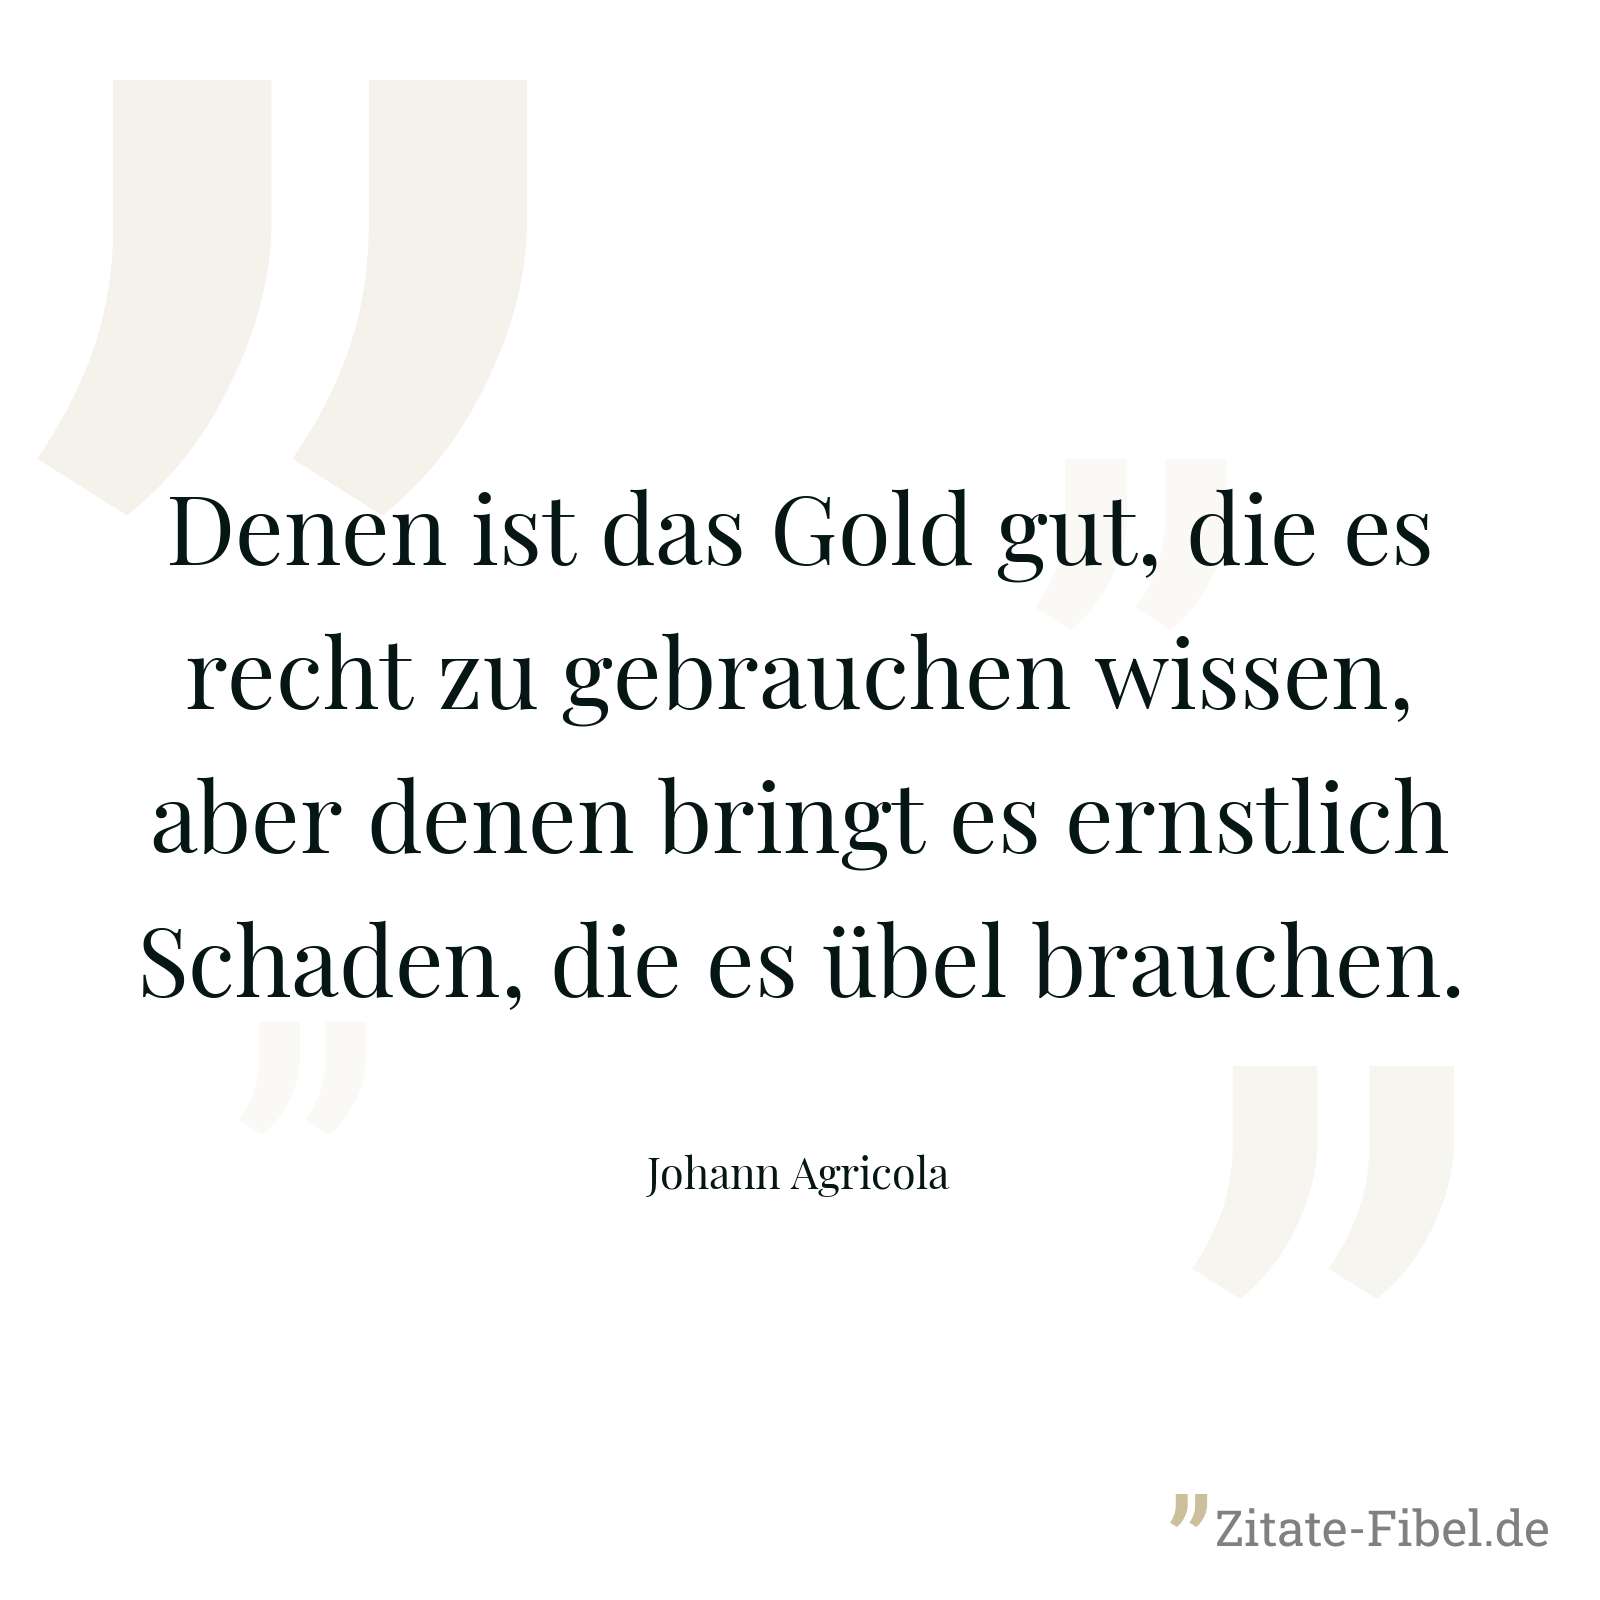 Denen ist das Gold gut, die es recht zu gebrauchen wissen, aber denen bringt es ernstlich Schaden, die es übel brauchen. - Johann Agricola